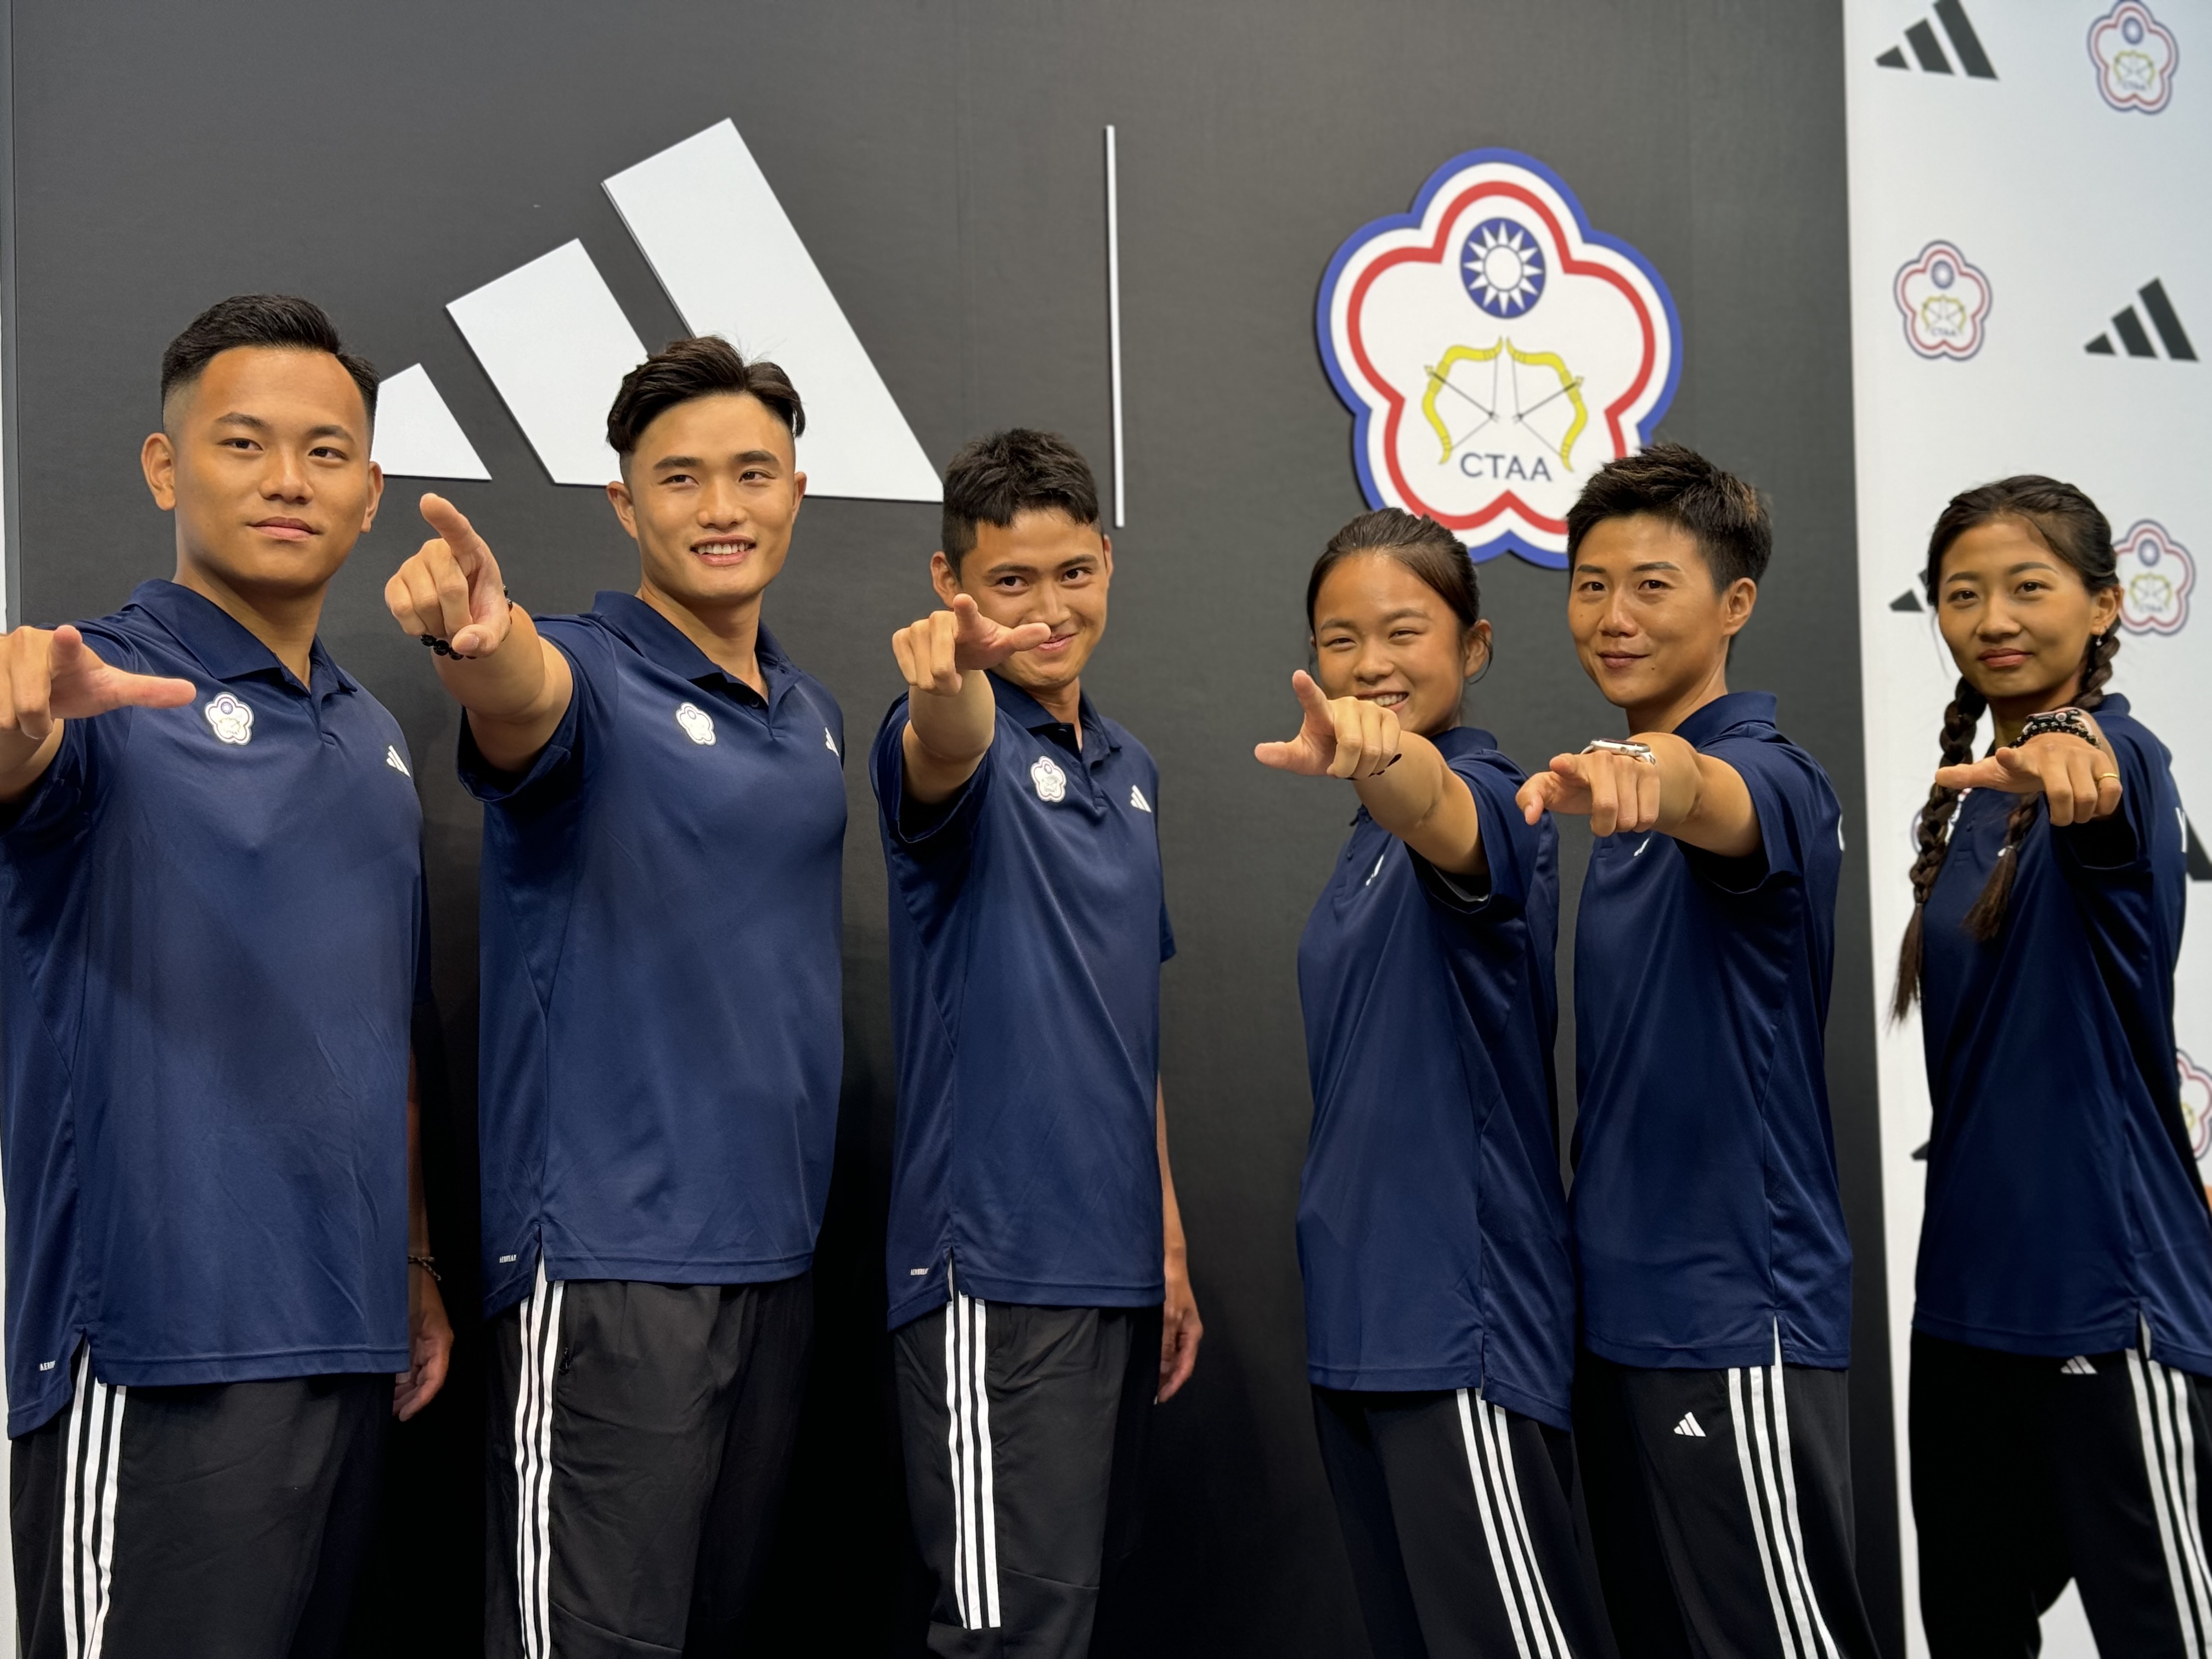 中华射箭队和adidas正式合作，6名奥运国手今天一同出席记者会。记者曾思儒／摄影